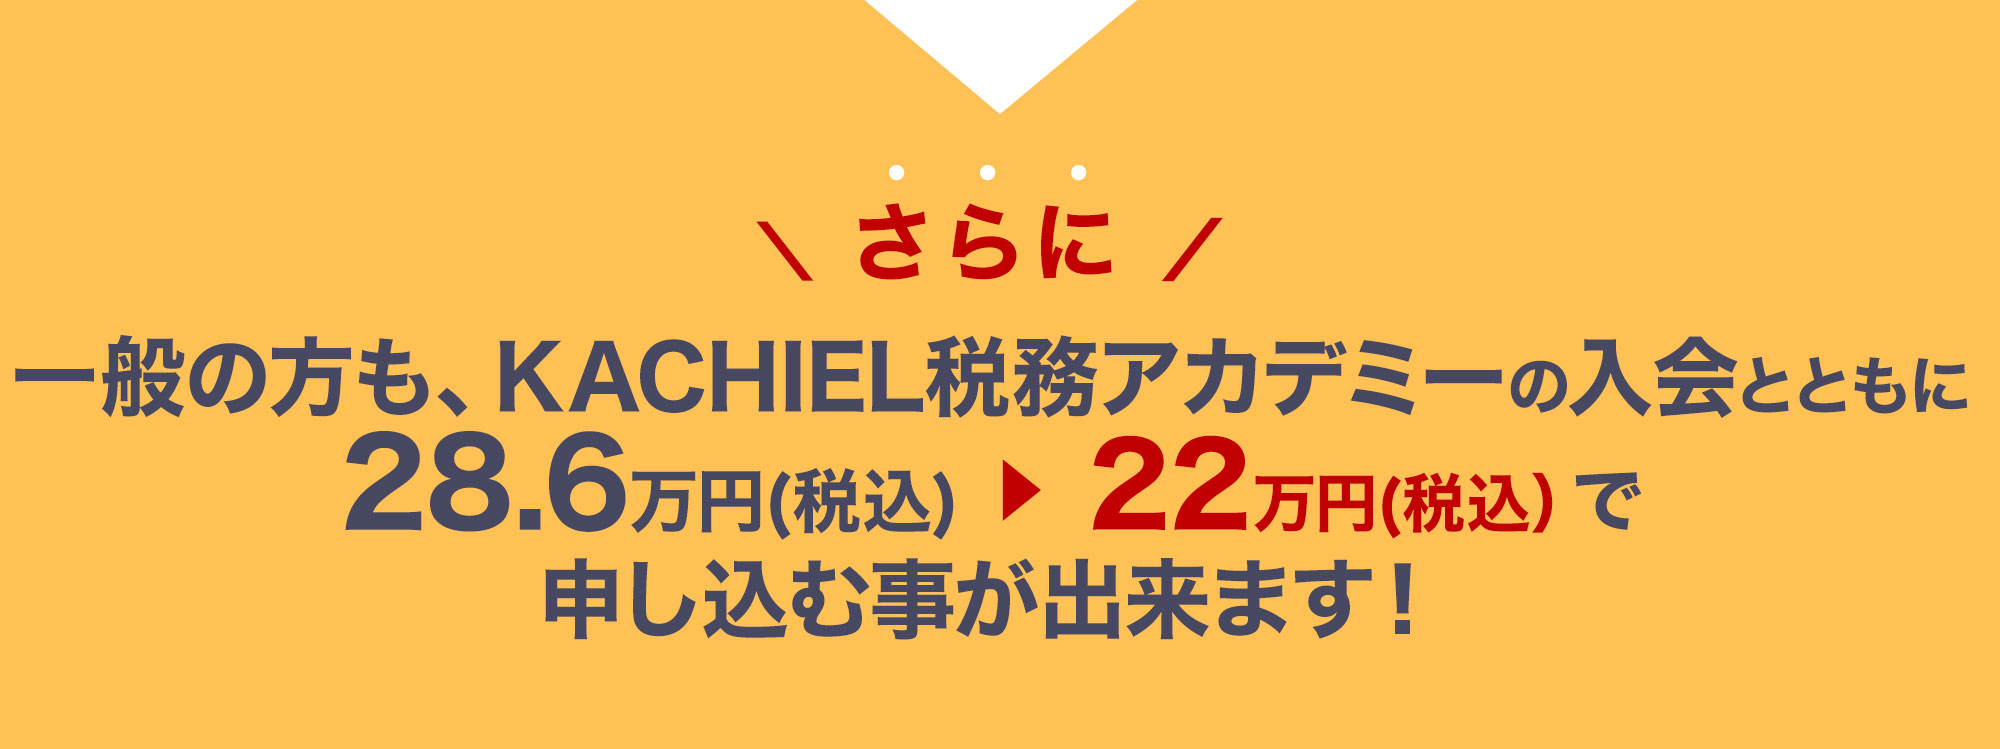 さらに一般の方も、KACHIEL税務アカデミーの入会とともに26万円（税別）から15万円（税別）で申し込む事が出来ます！